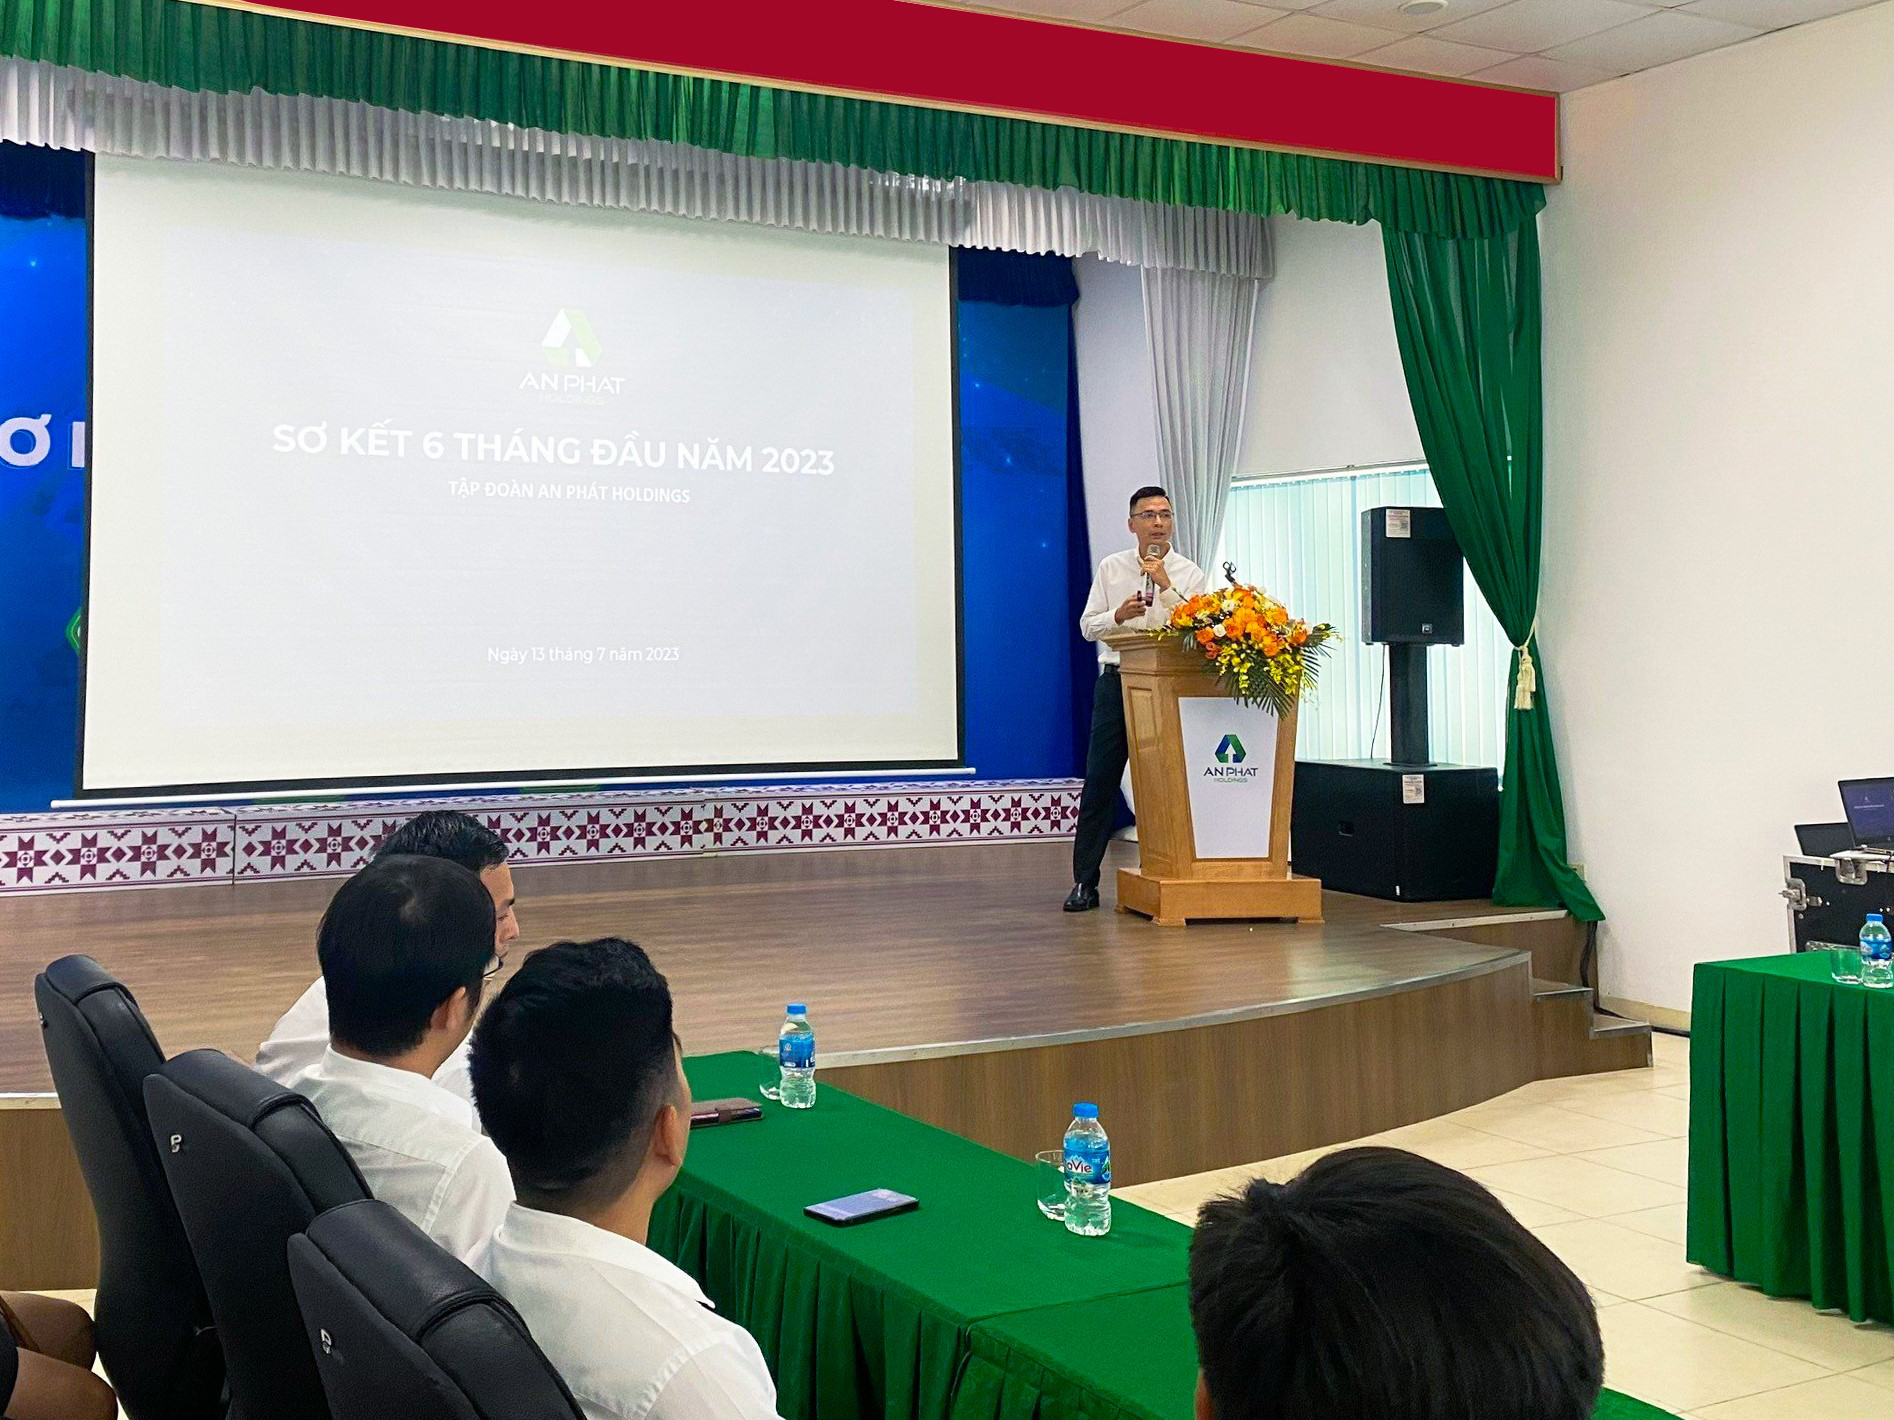 Ông Phạm Đỗ Huy Cường – CEO An Phát Holdings trình bày Báo cáo kết quả kinh doanh 6 tháng đầu năm